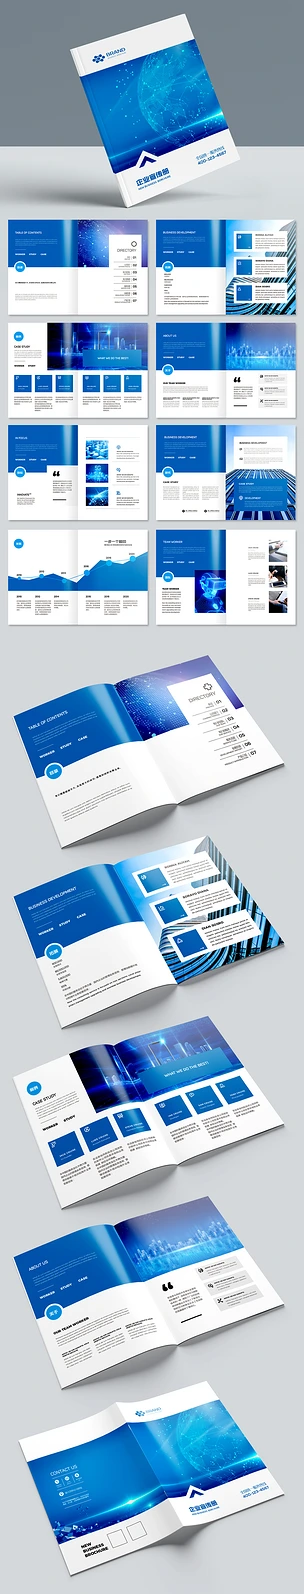 简约大气蓝色科技宣传册企业画册设计模板